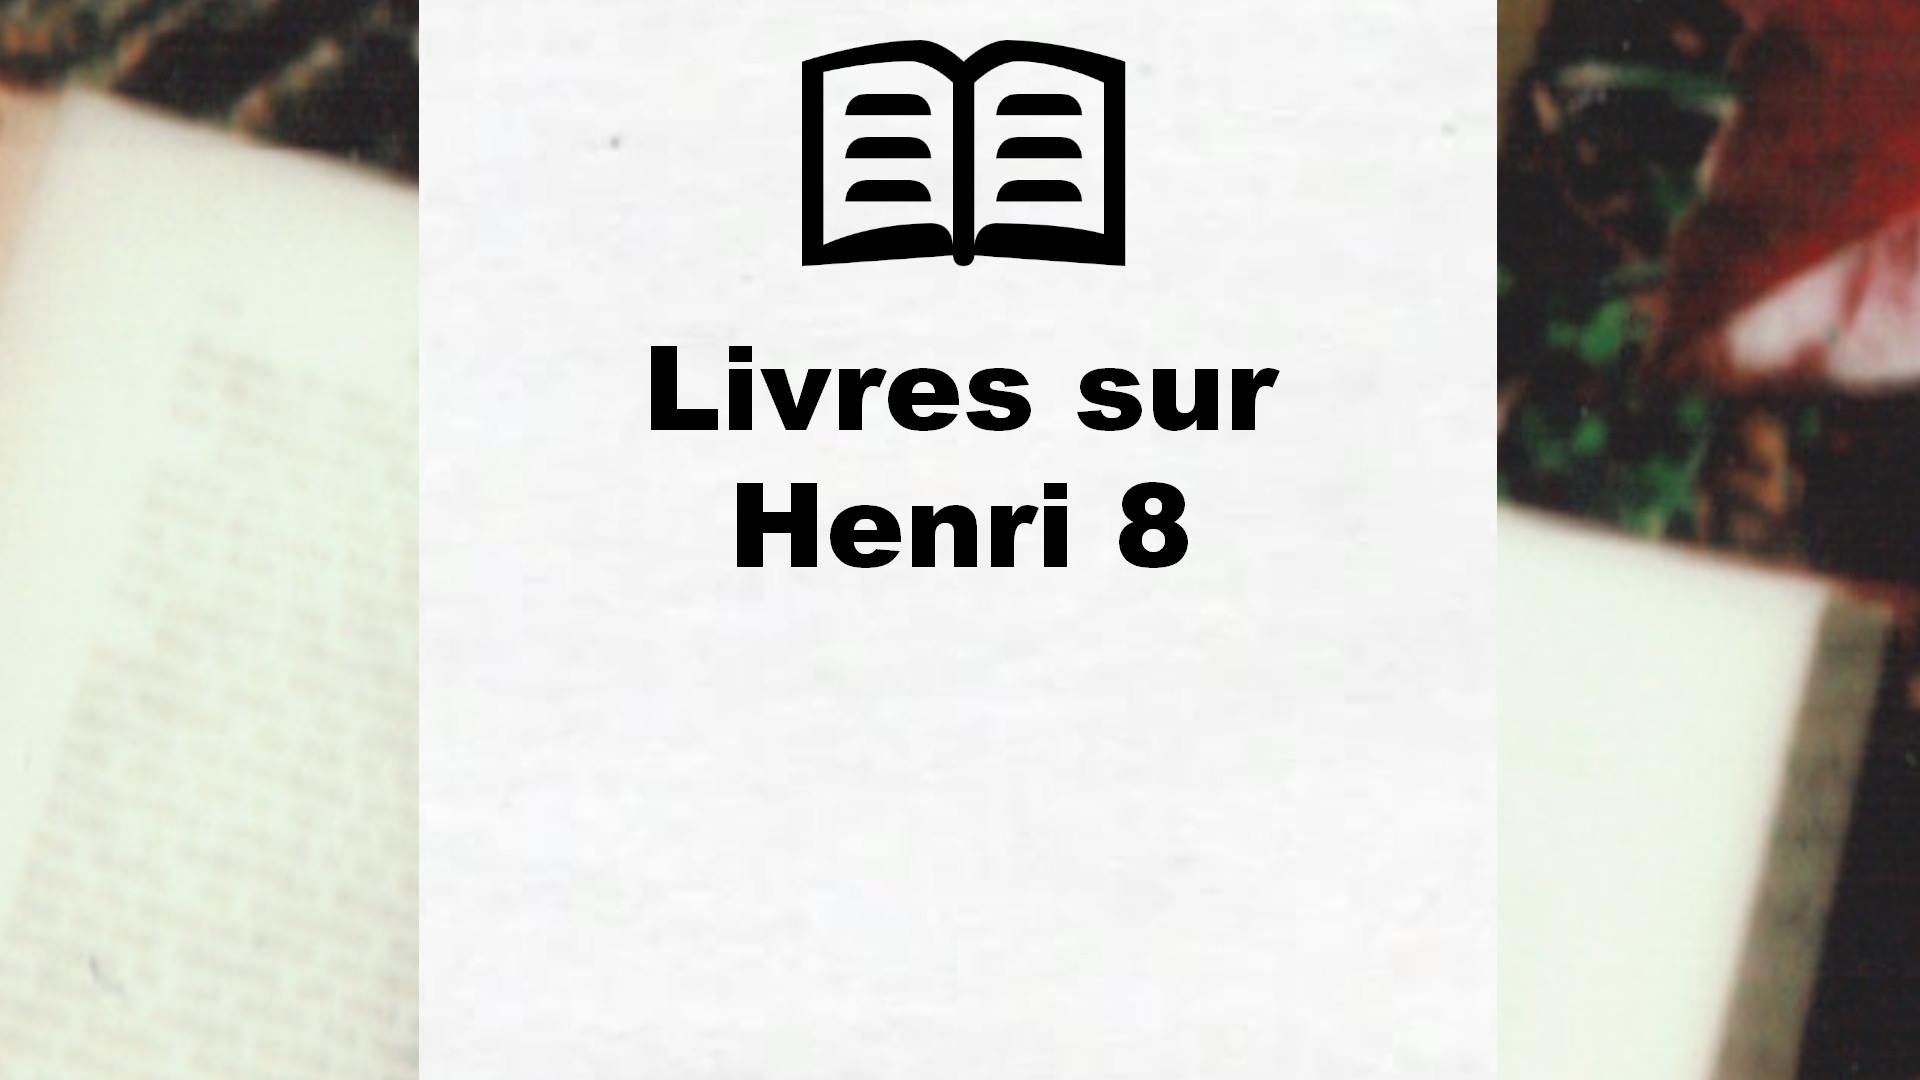 Livres sur Henri 8